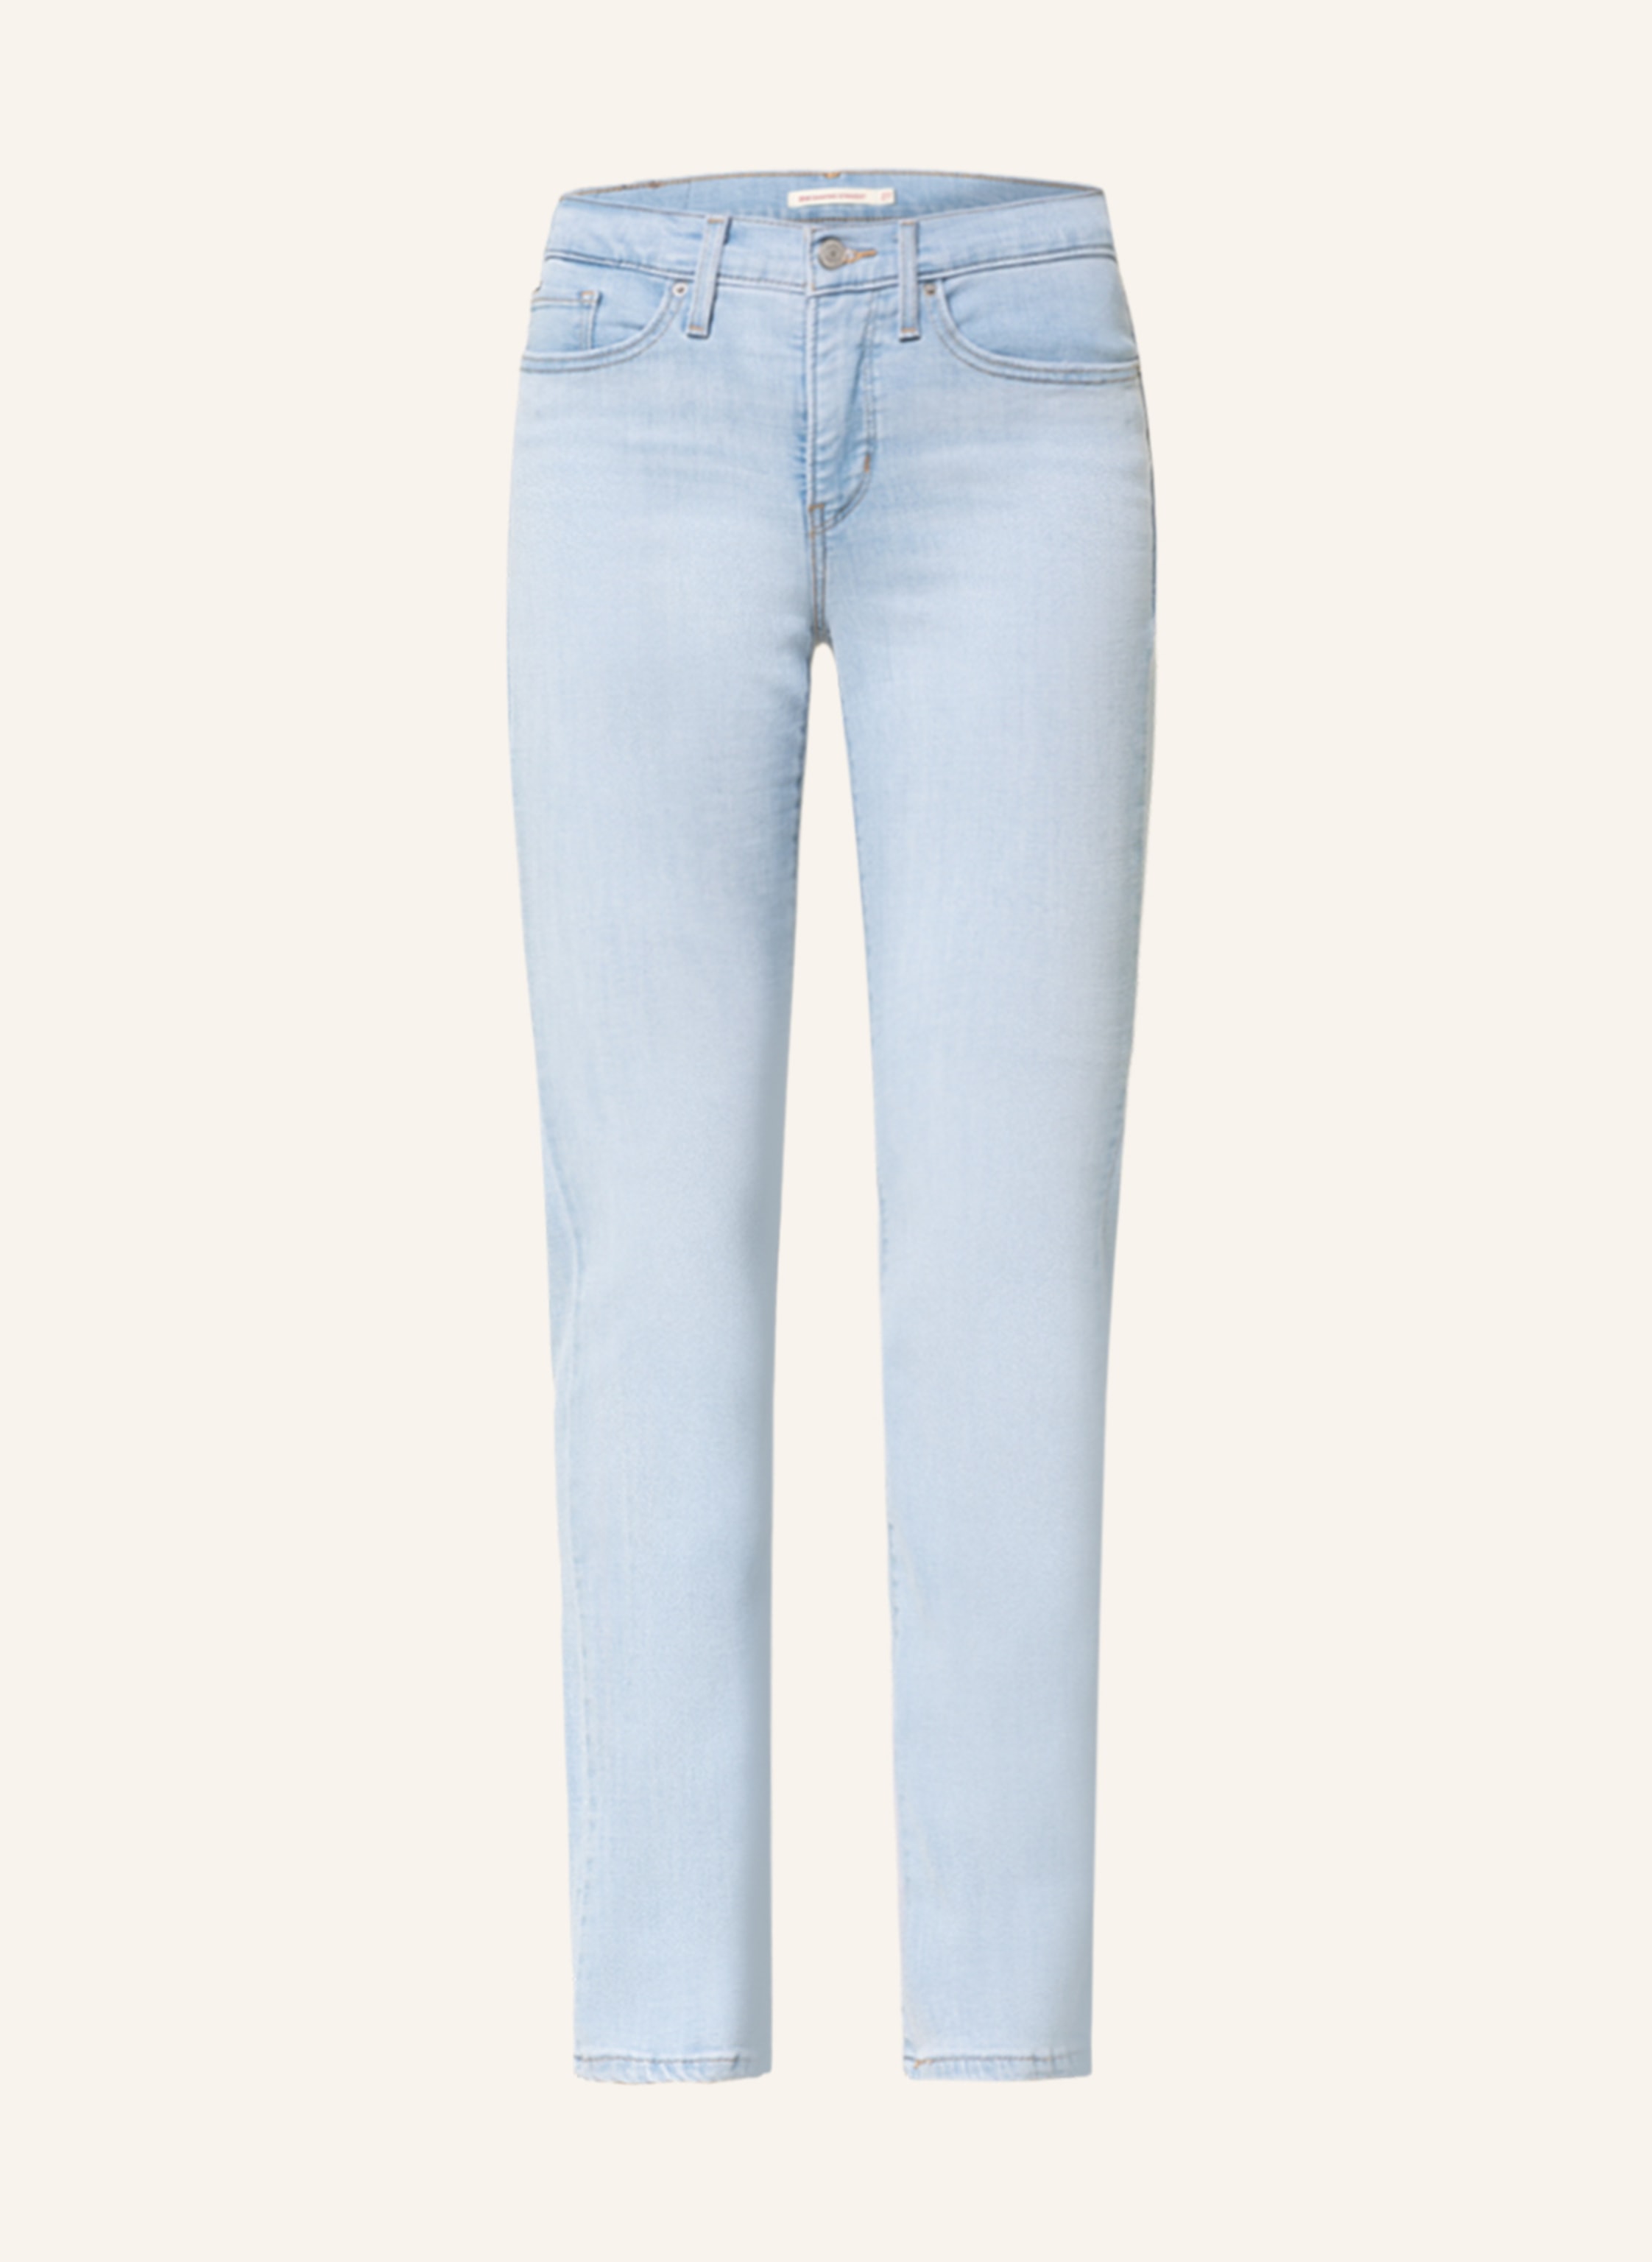 Levi's® Straight jeans 314 SHAPING STRAIGHT in 0163 slate era | Breuninger